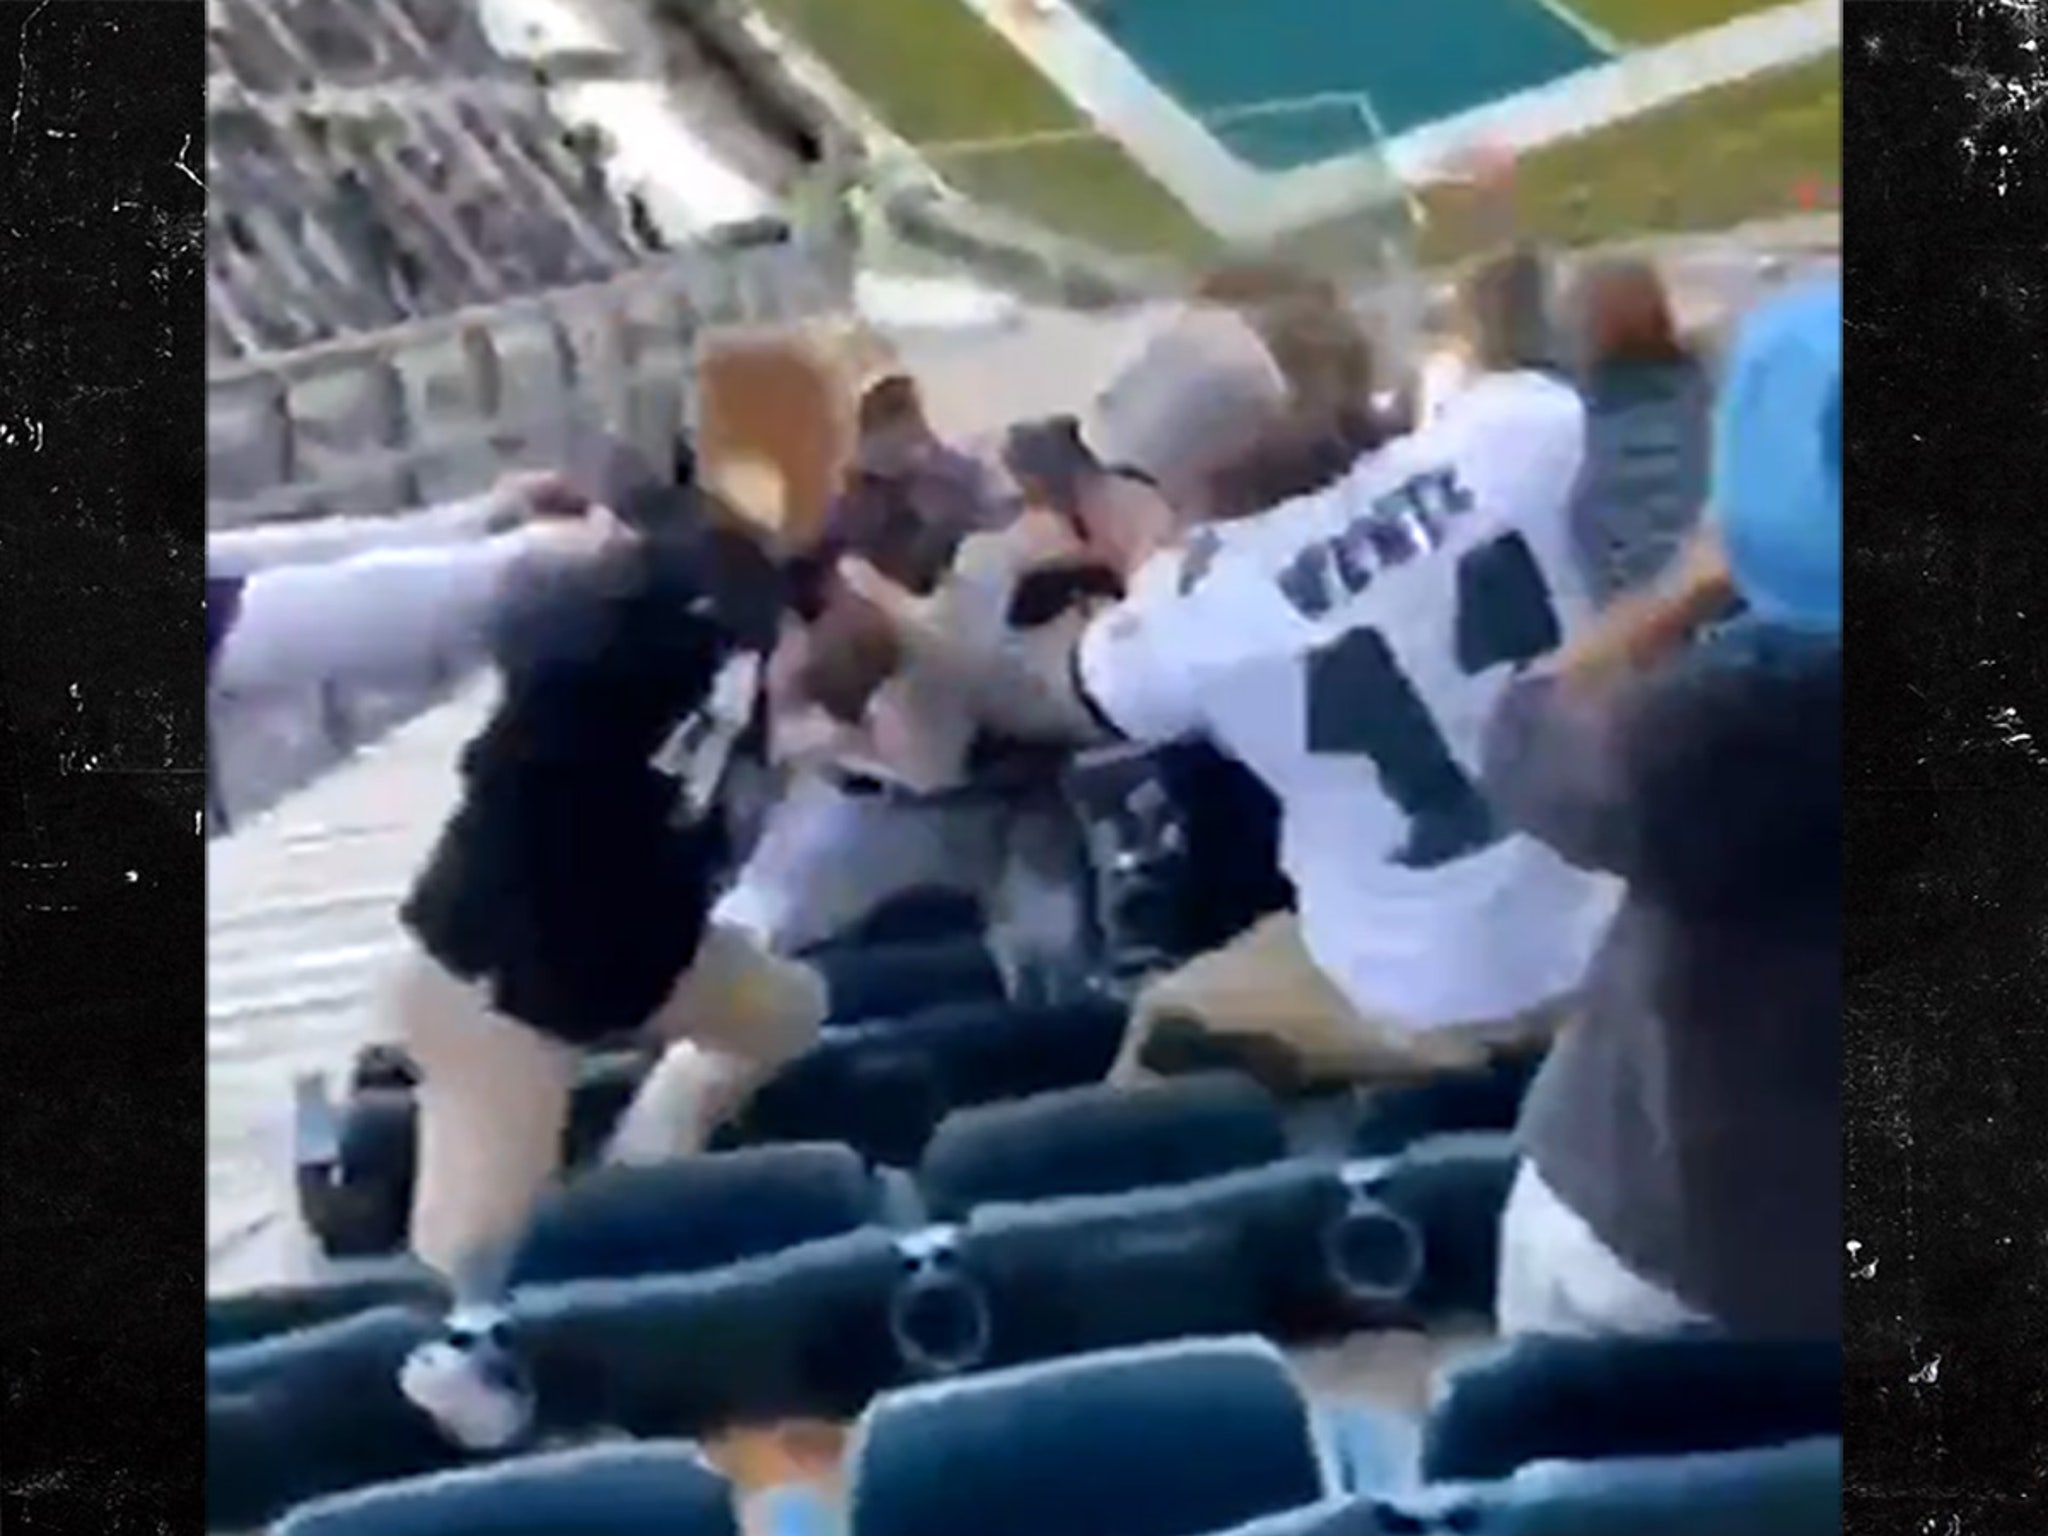 Eagles Fans Get In Violent Fistfight In Stands Despite Social